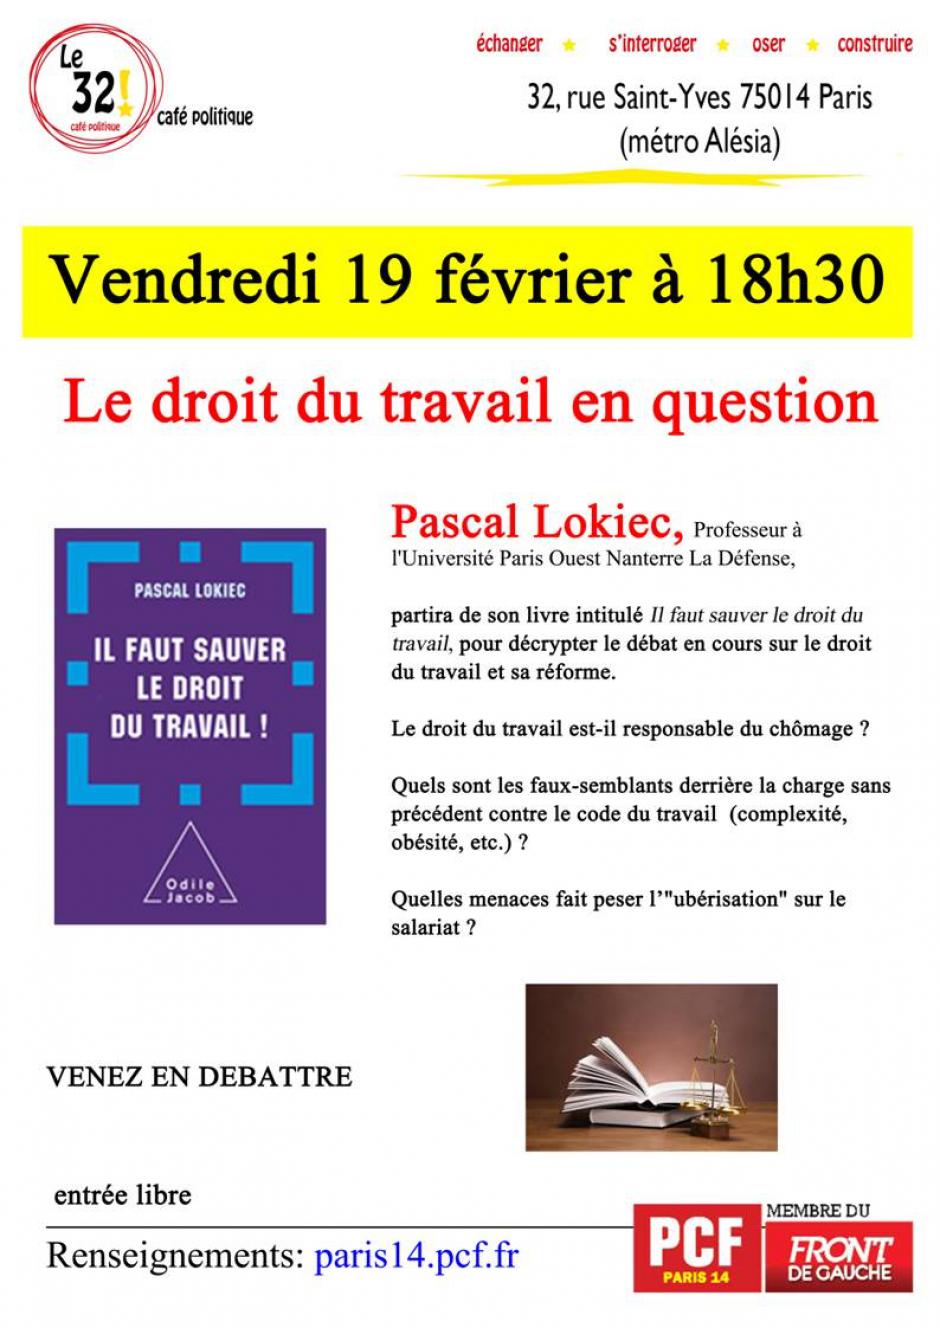 Le droit du travail en question avec Pascal Lokiec, Professeur à l'Université Paris Ouest Nanterre La Défense